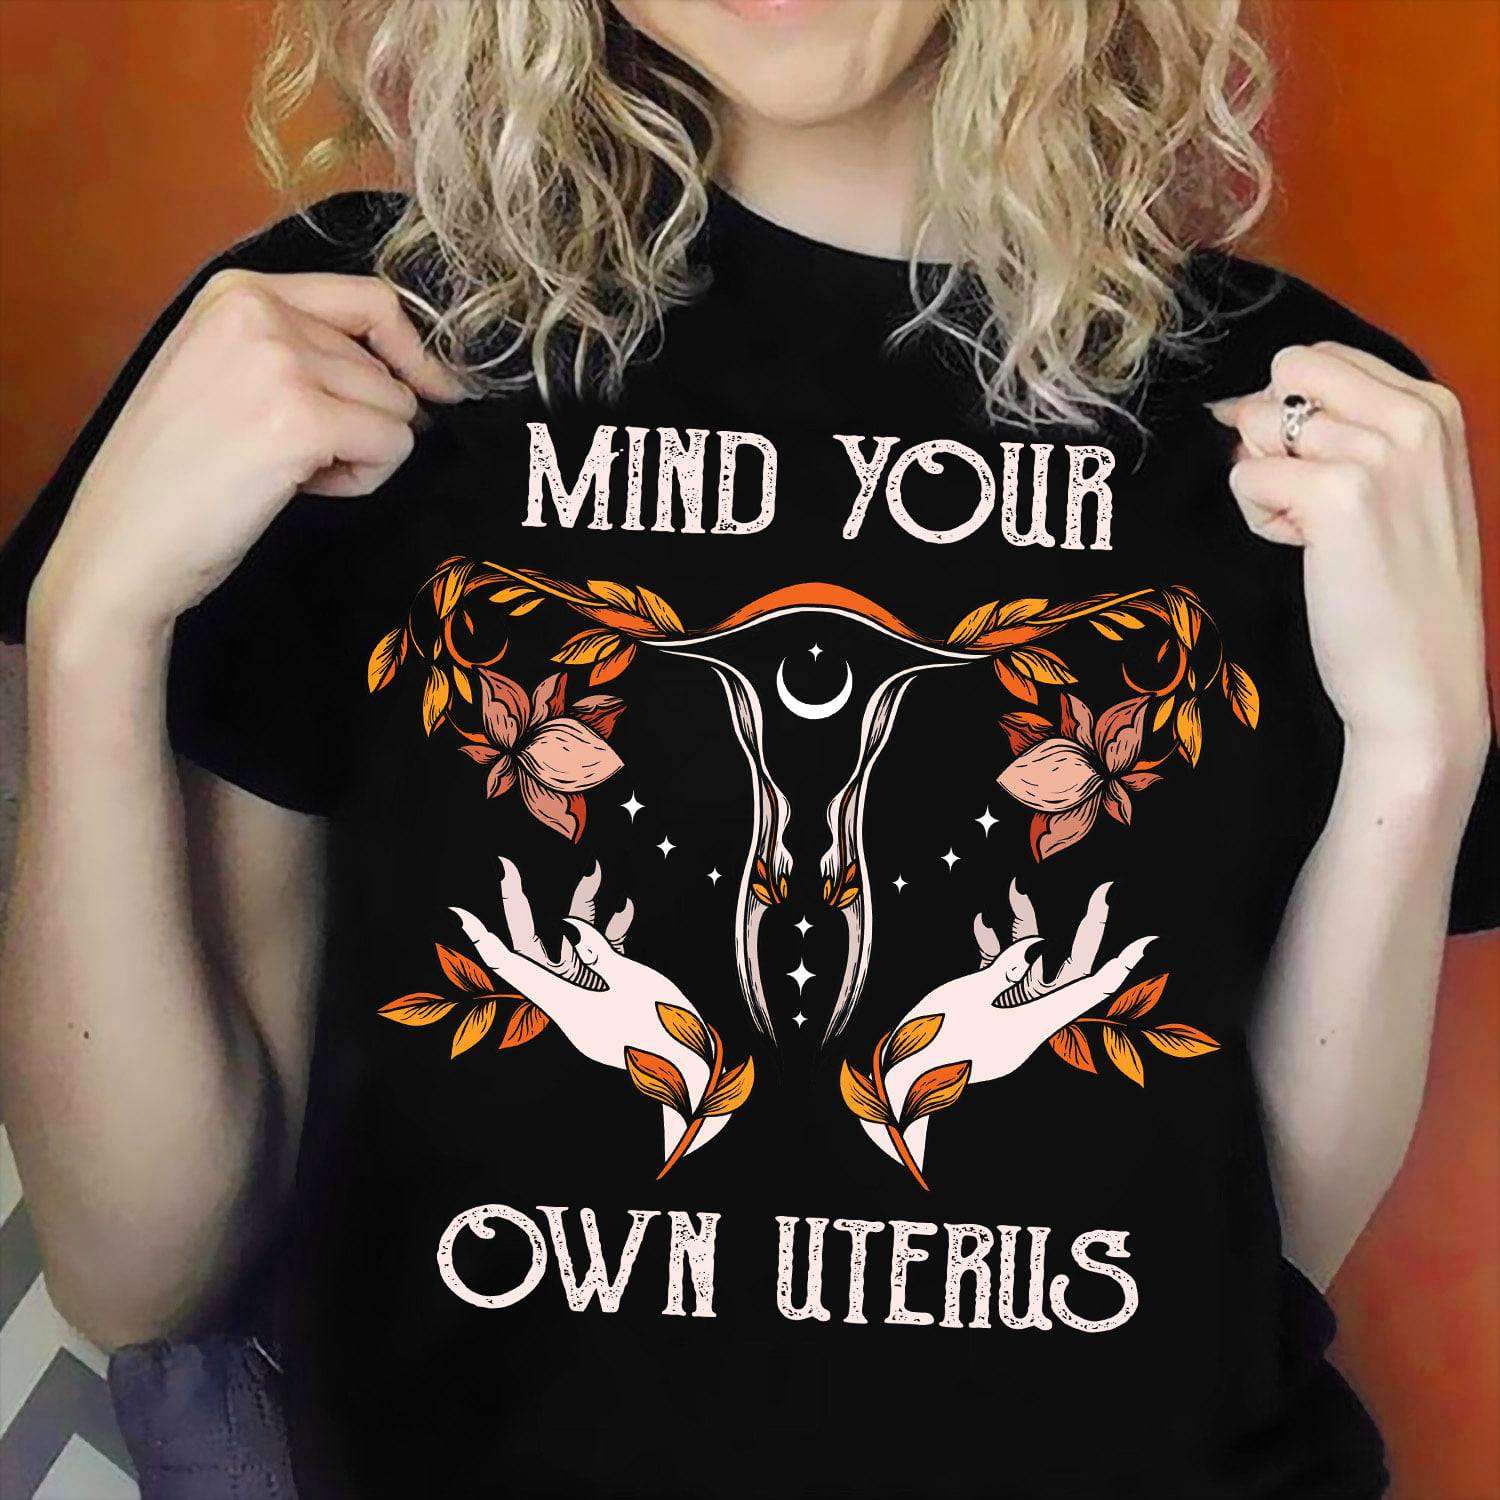 Cosset Uterus - Mind your own uterus